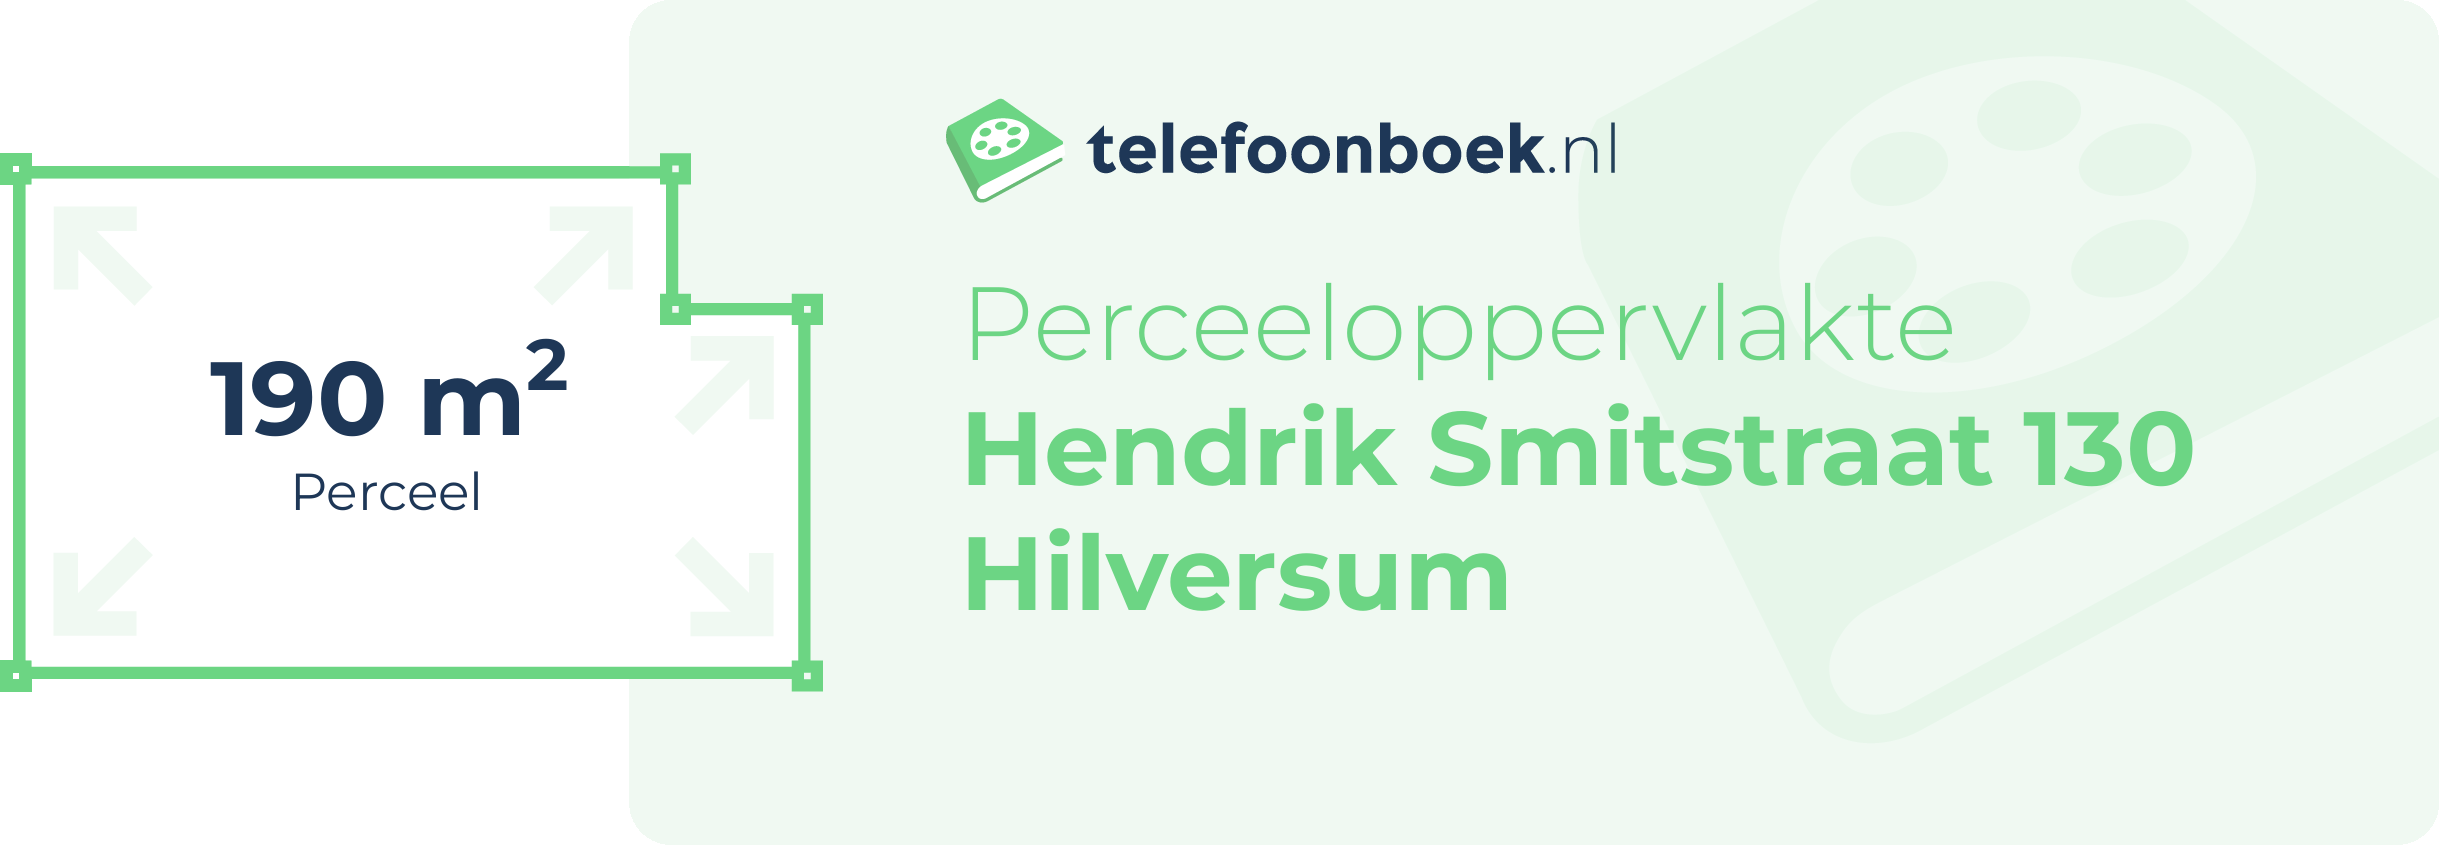 Perceeloppervlakte Hendrik Smitstraat 130 Hilversum